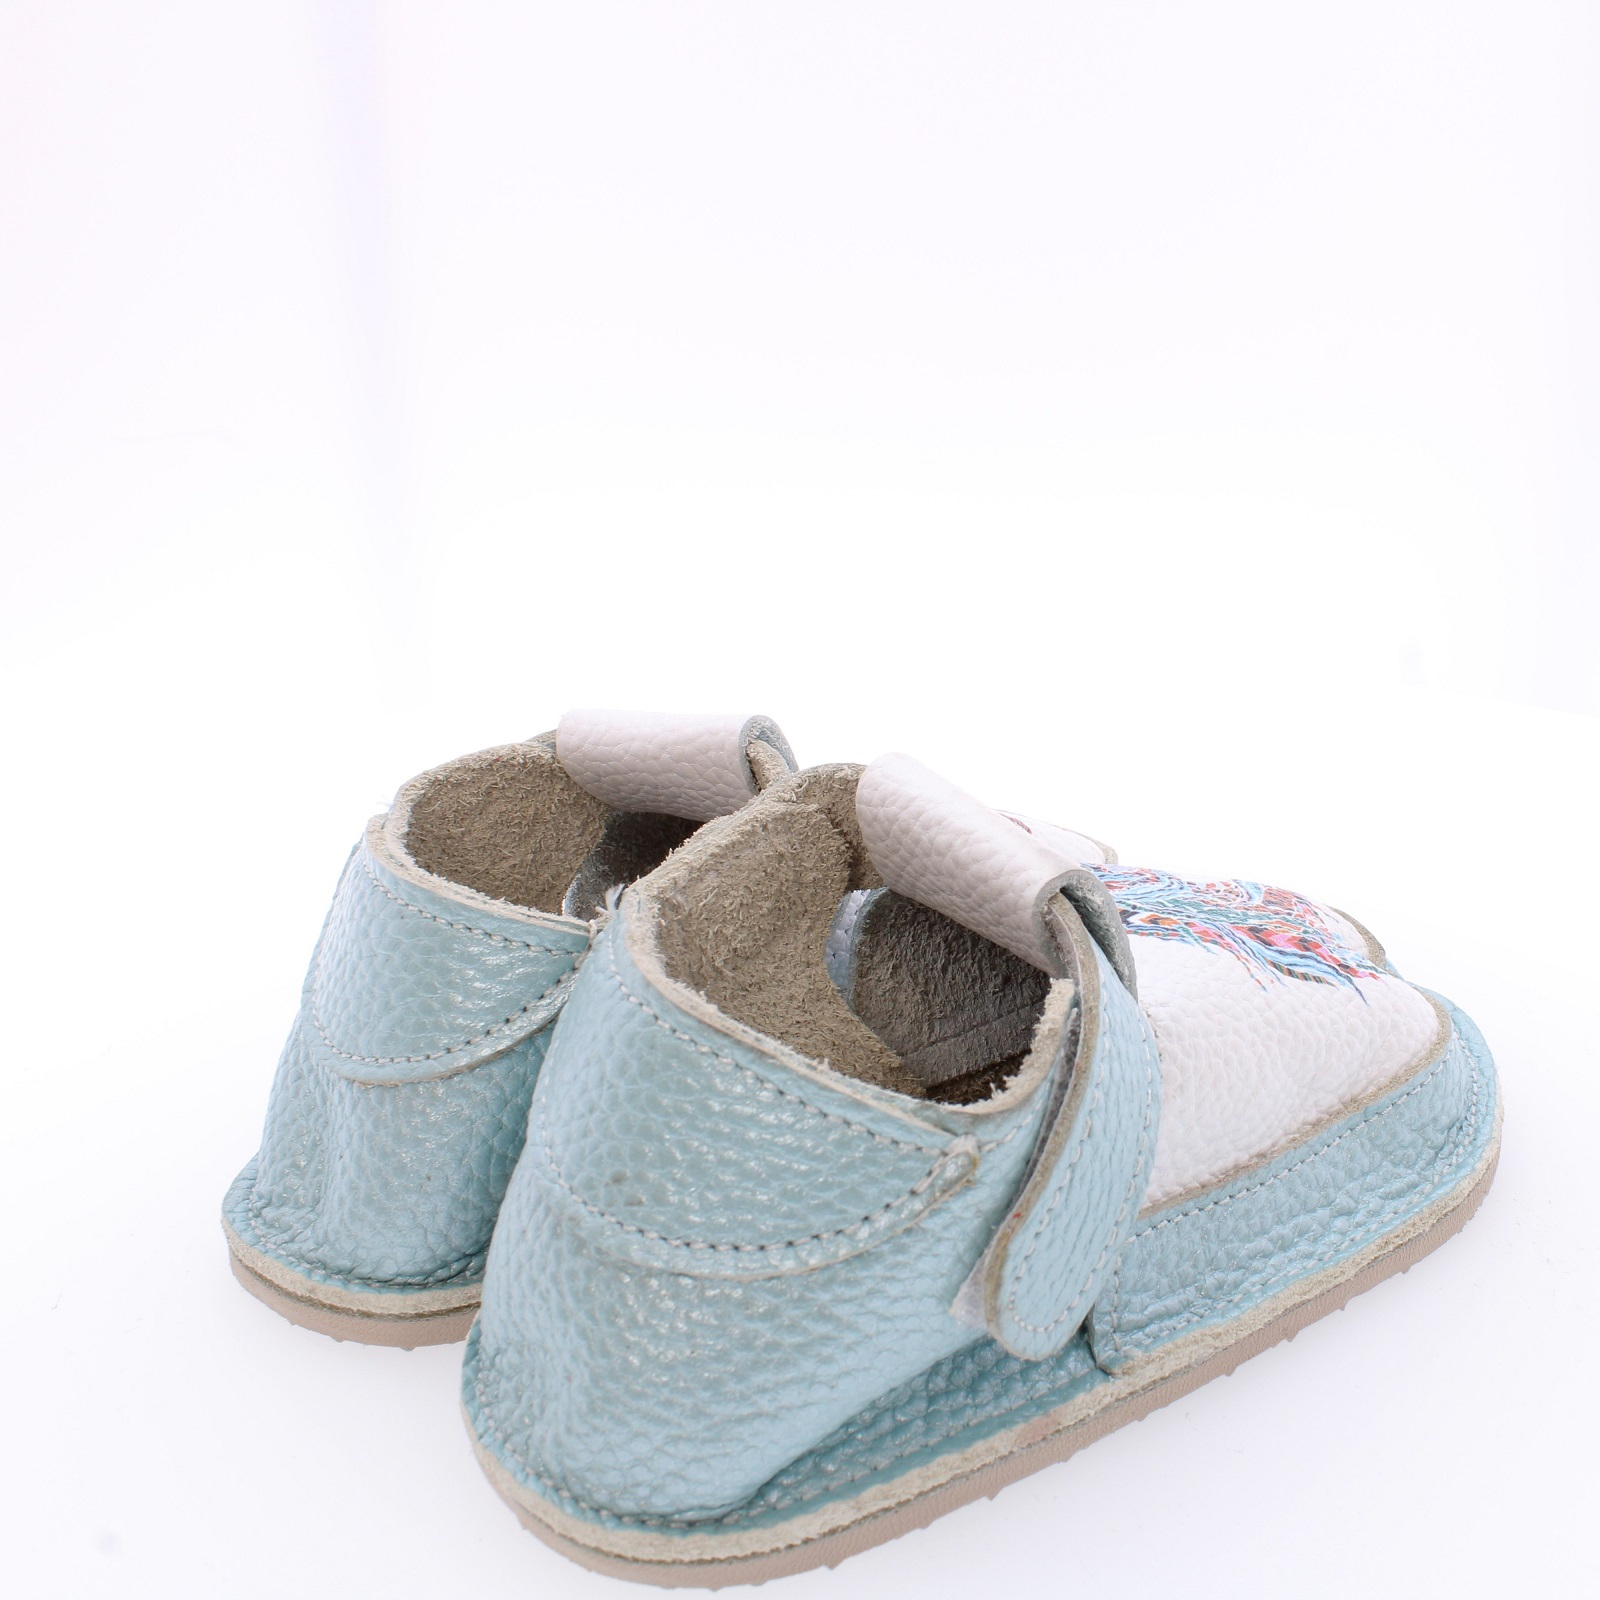 Pantofi / Sandale - Calut colorat